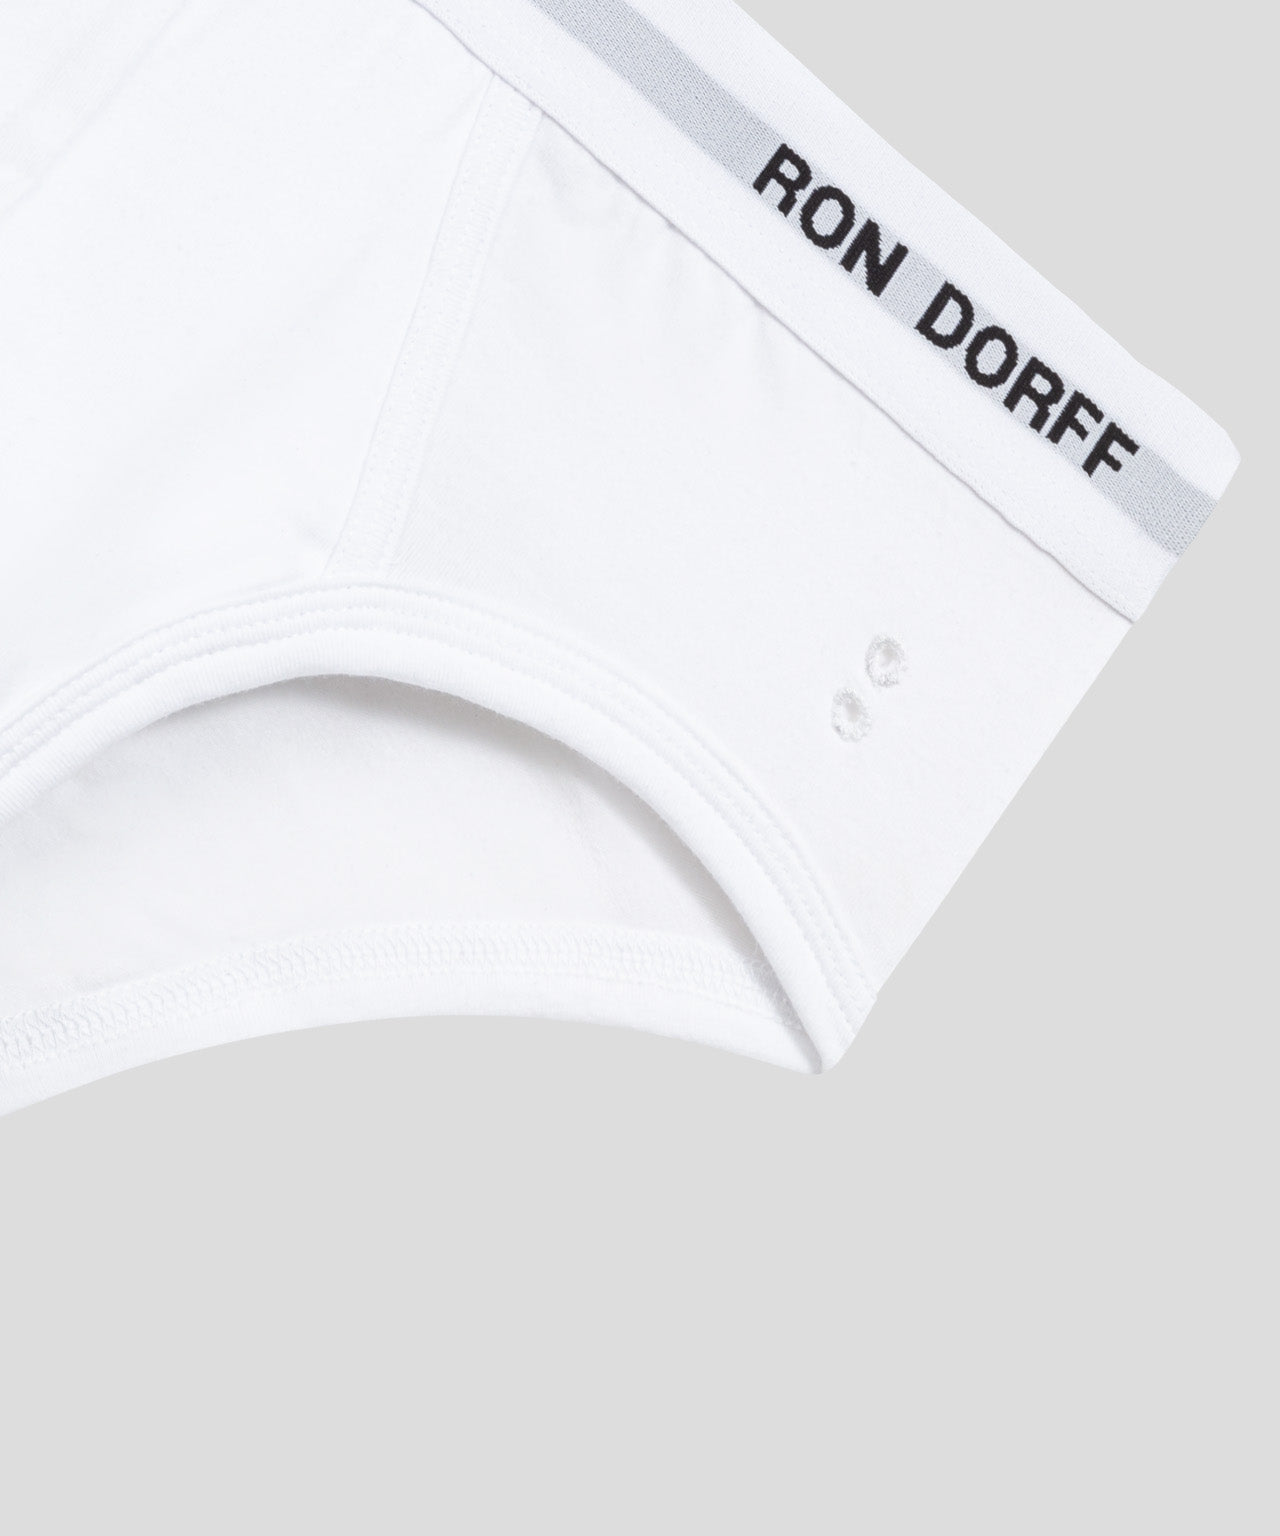 Slips Y-front en coton à imprimés RON DORFF: Bleu marine/Blanc/Noir